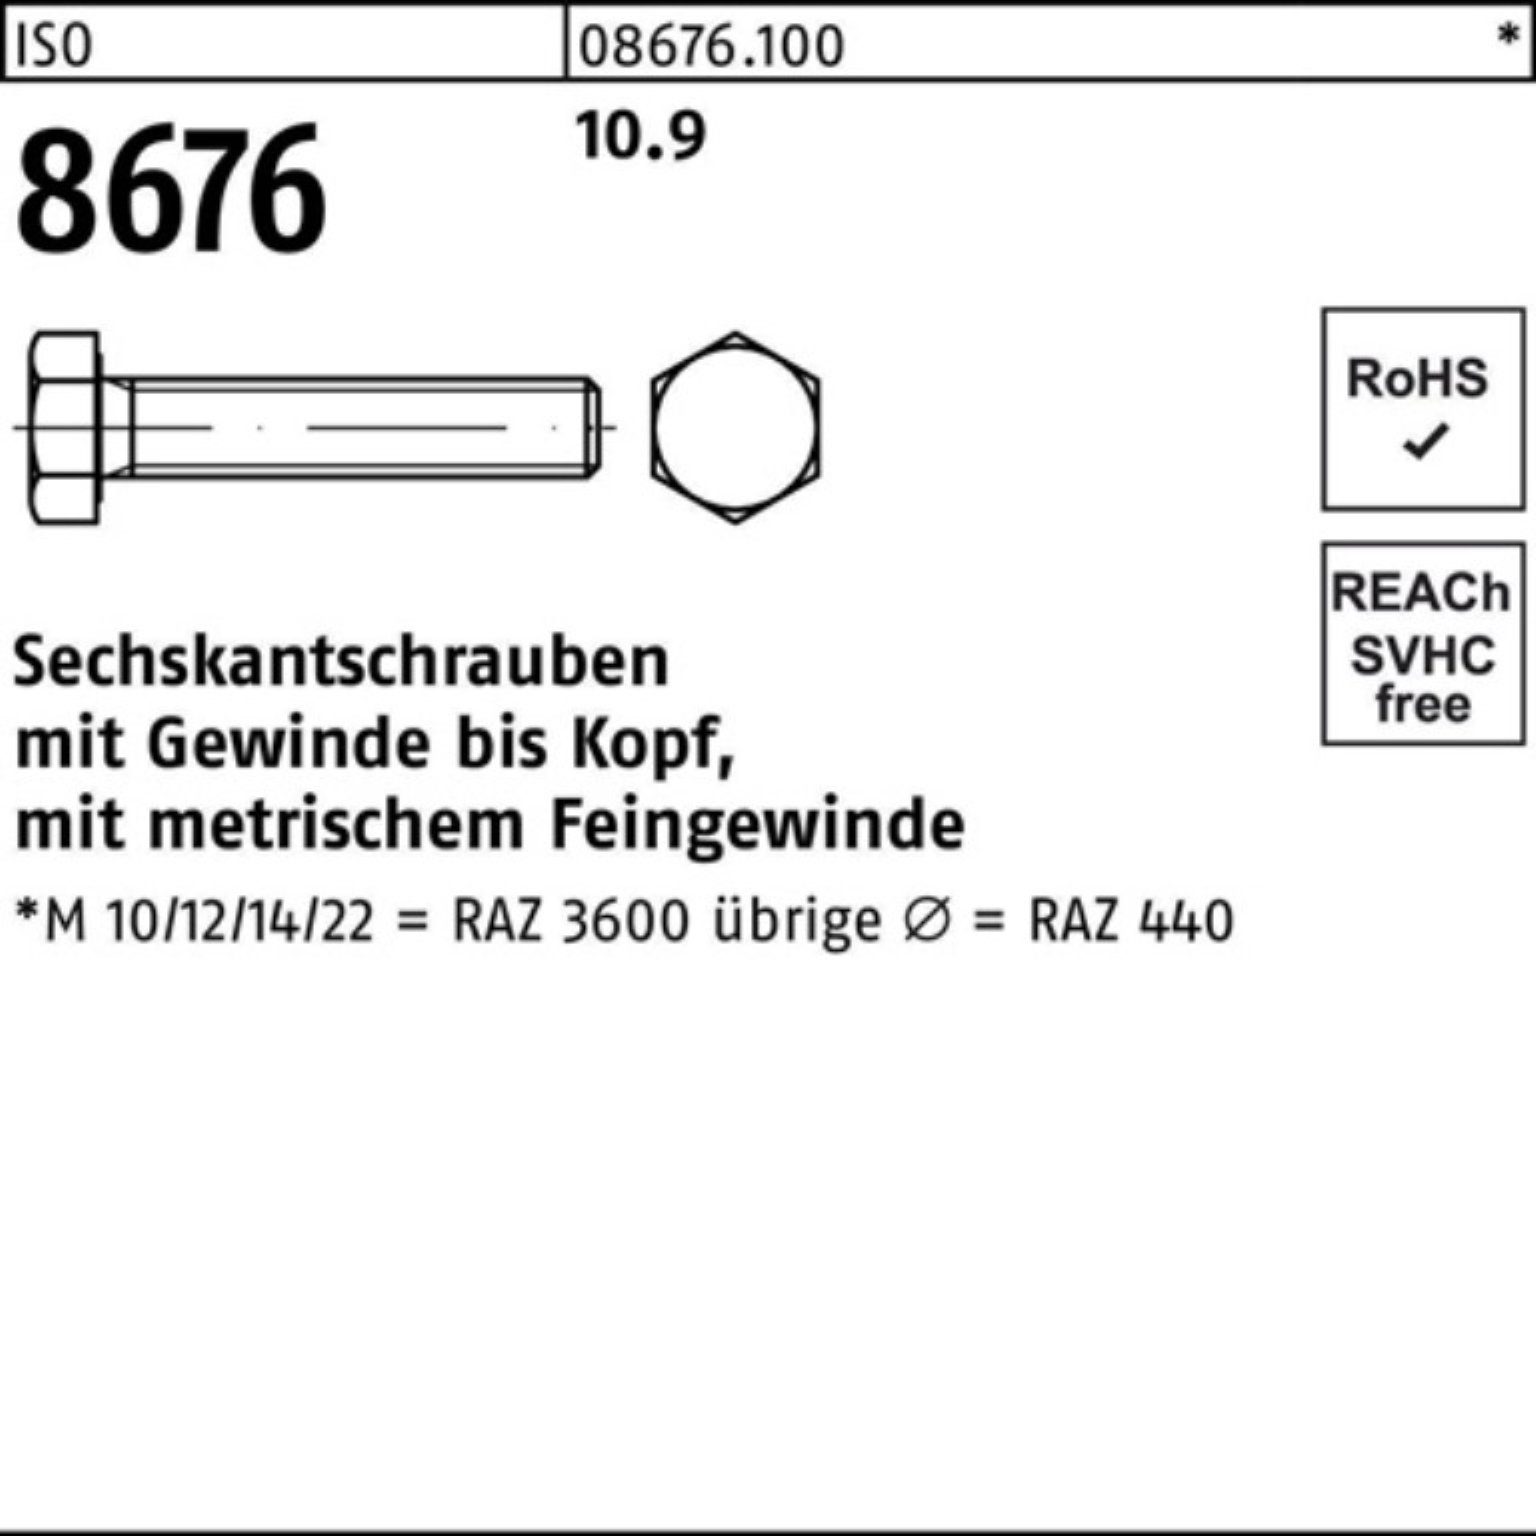 Reyher Sechskantschraube 100er Pack Sechskantschraube VG 8676 10.9 M10x1,25x Stück ISO 50 100